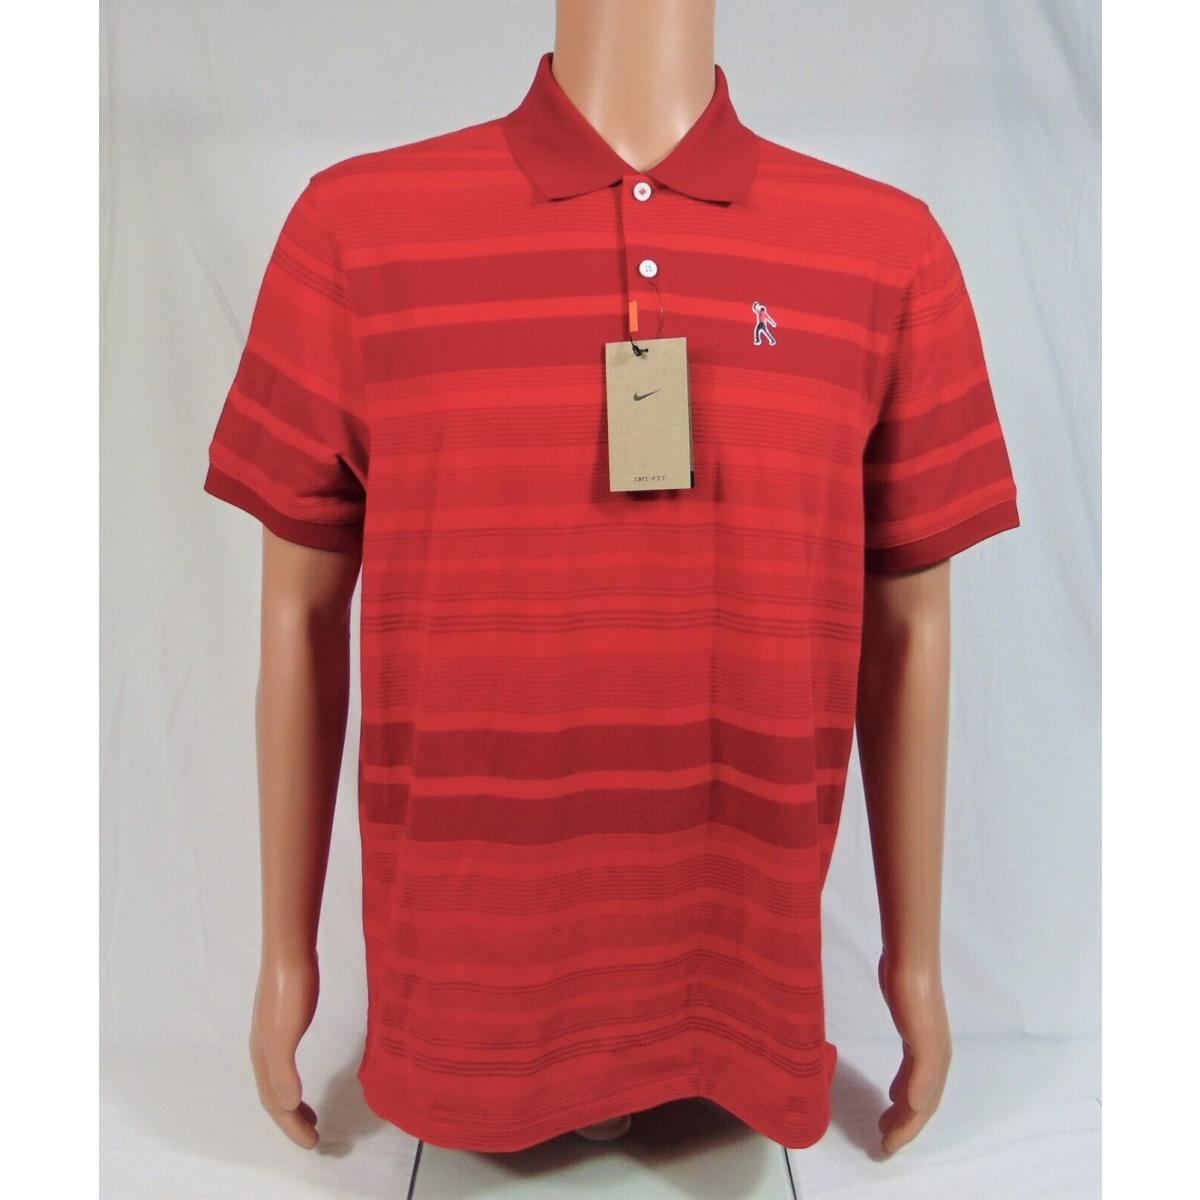 Nike Tiger Woods Sunday Red Masters Polo Golf Shirt Sz S DA3084 687 Rare